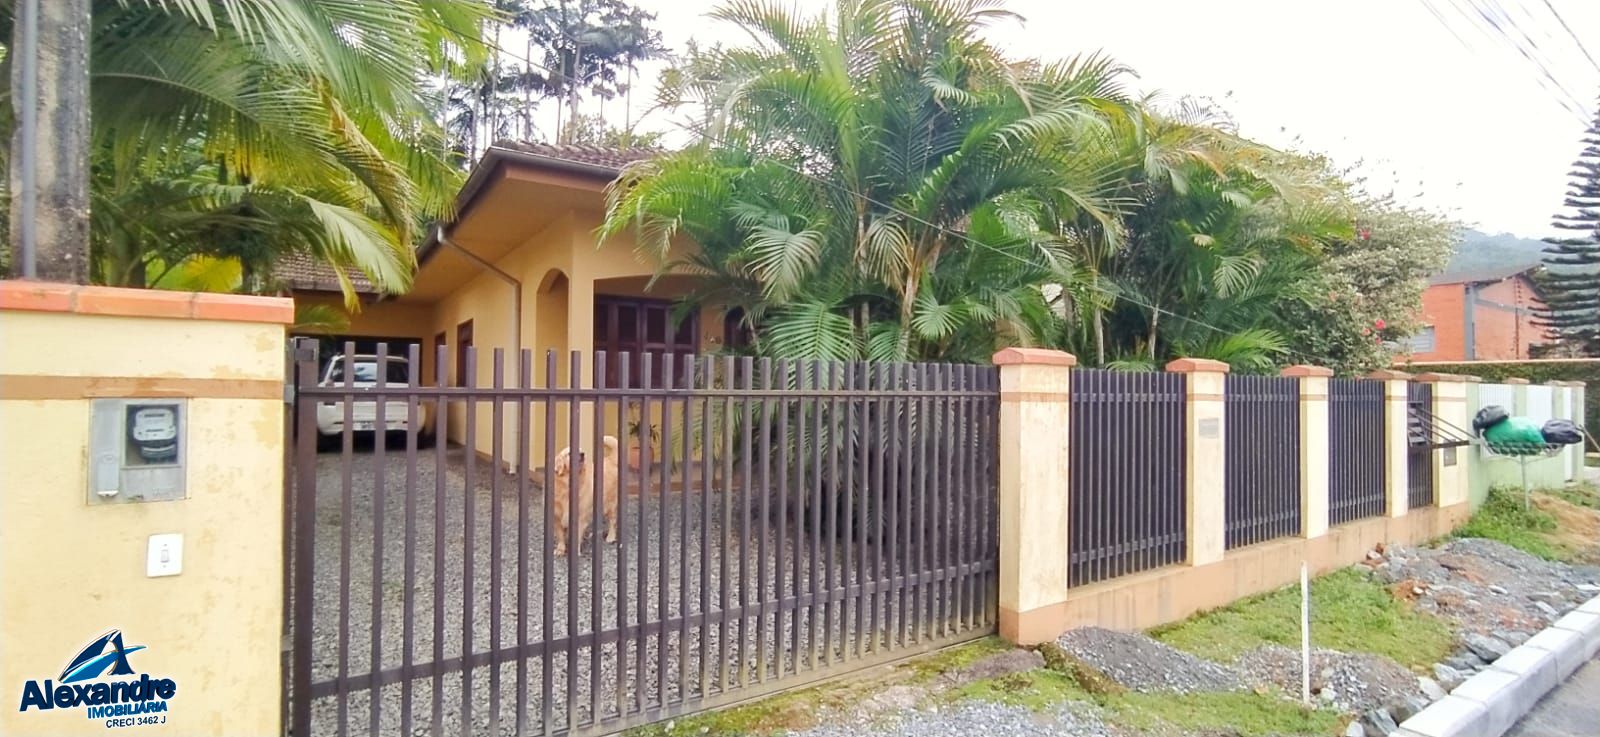 Casa  venda  no So Lus - Jaragu do Sul, SC. Imveis